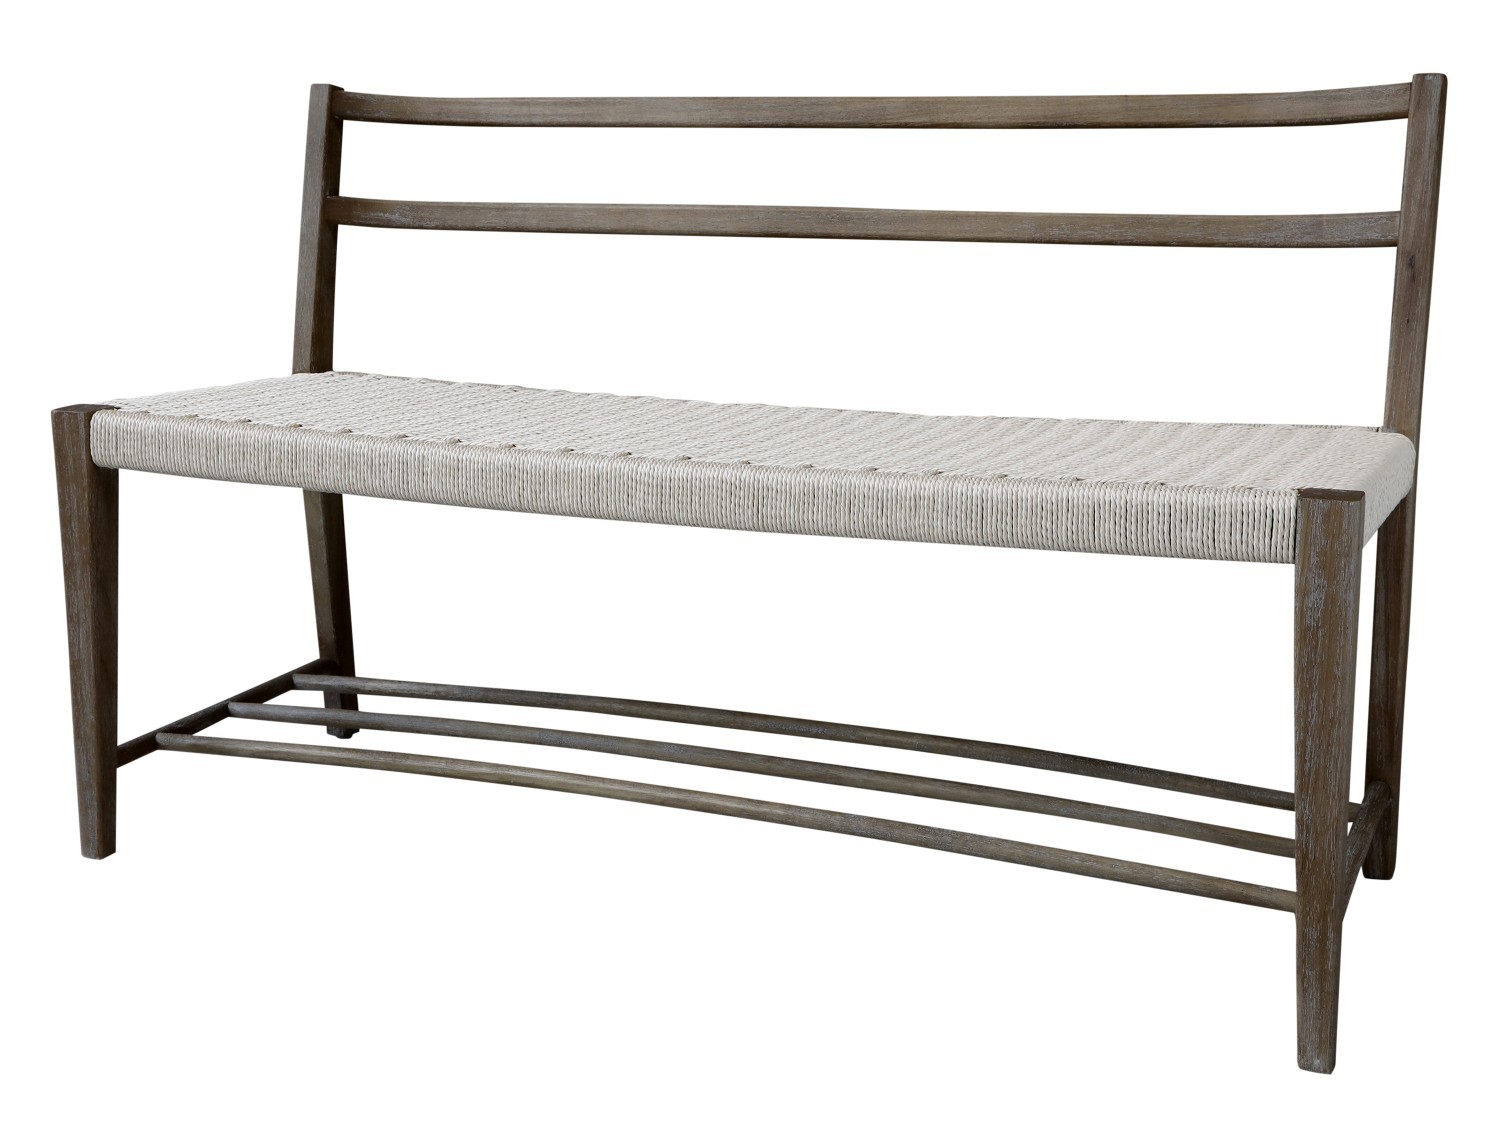 Přírodní dřevěná lavice s výpletem Limoges Bench - 120*47*77cm  Chic Antique